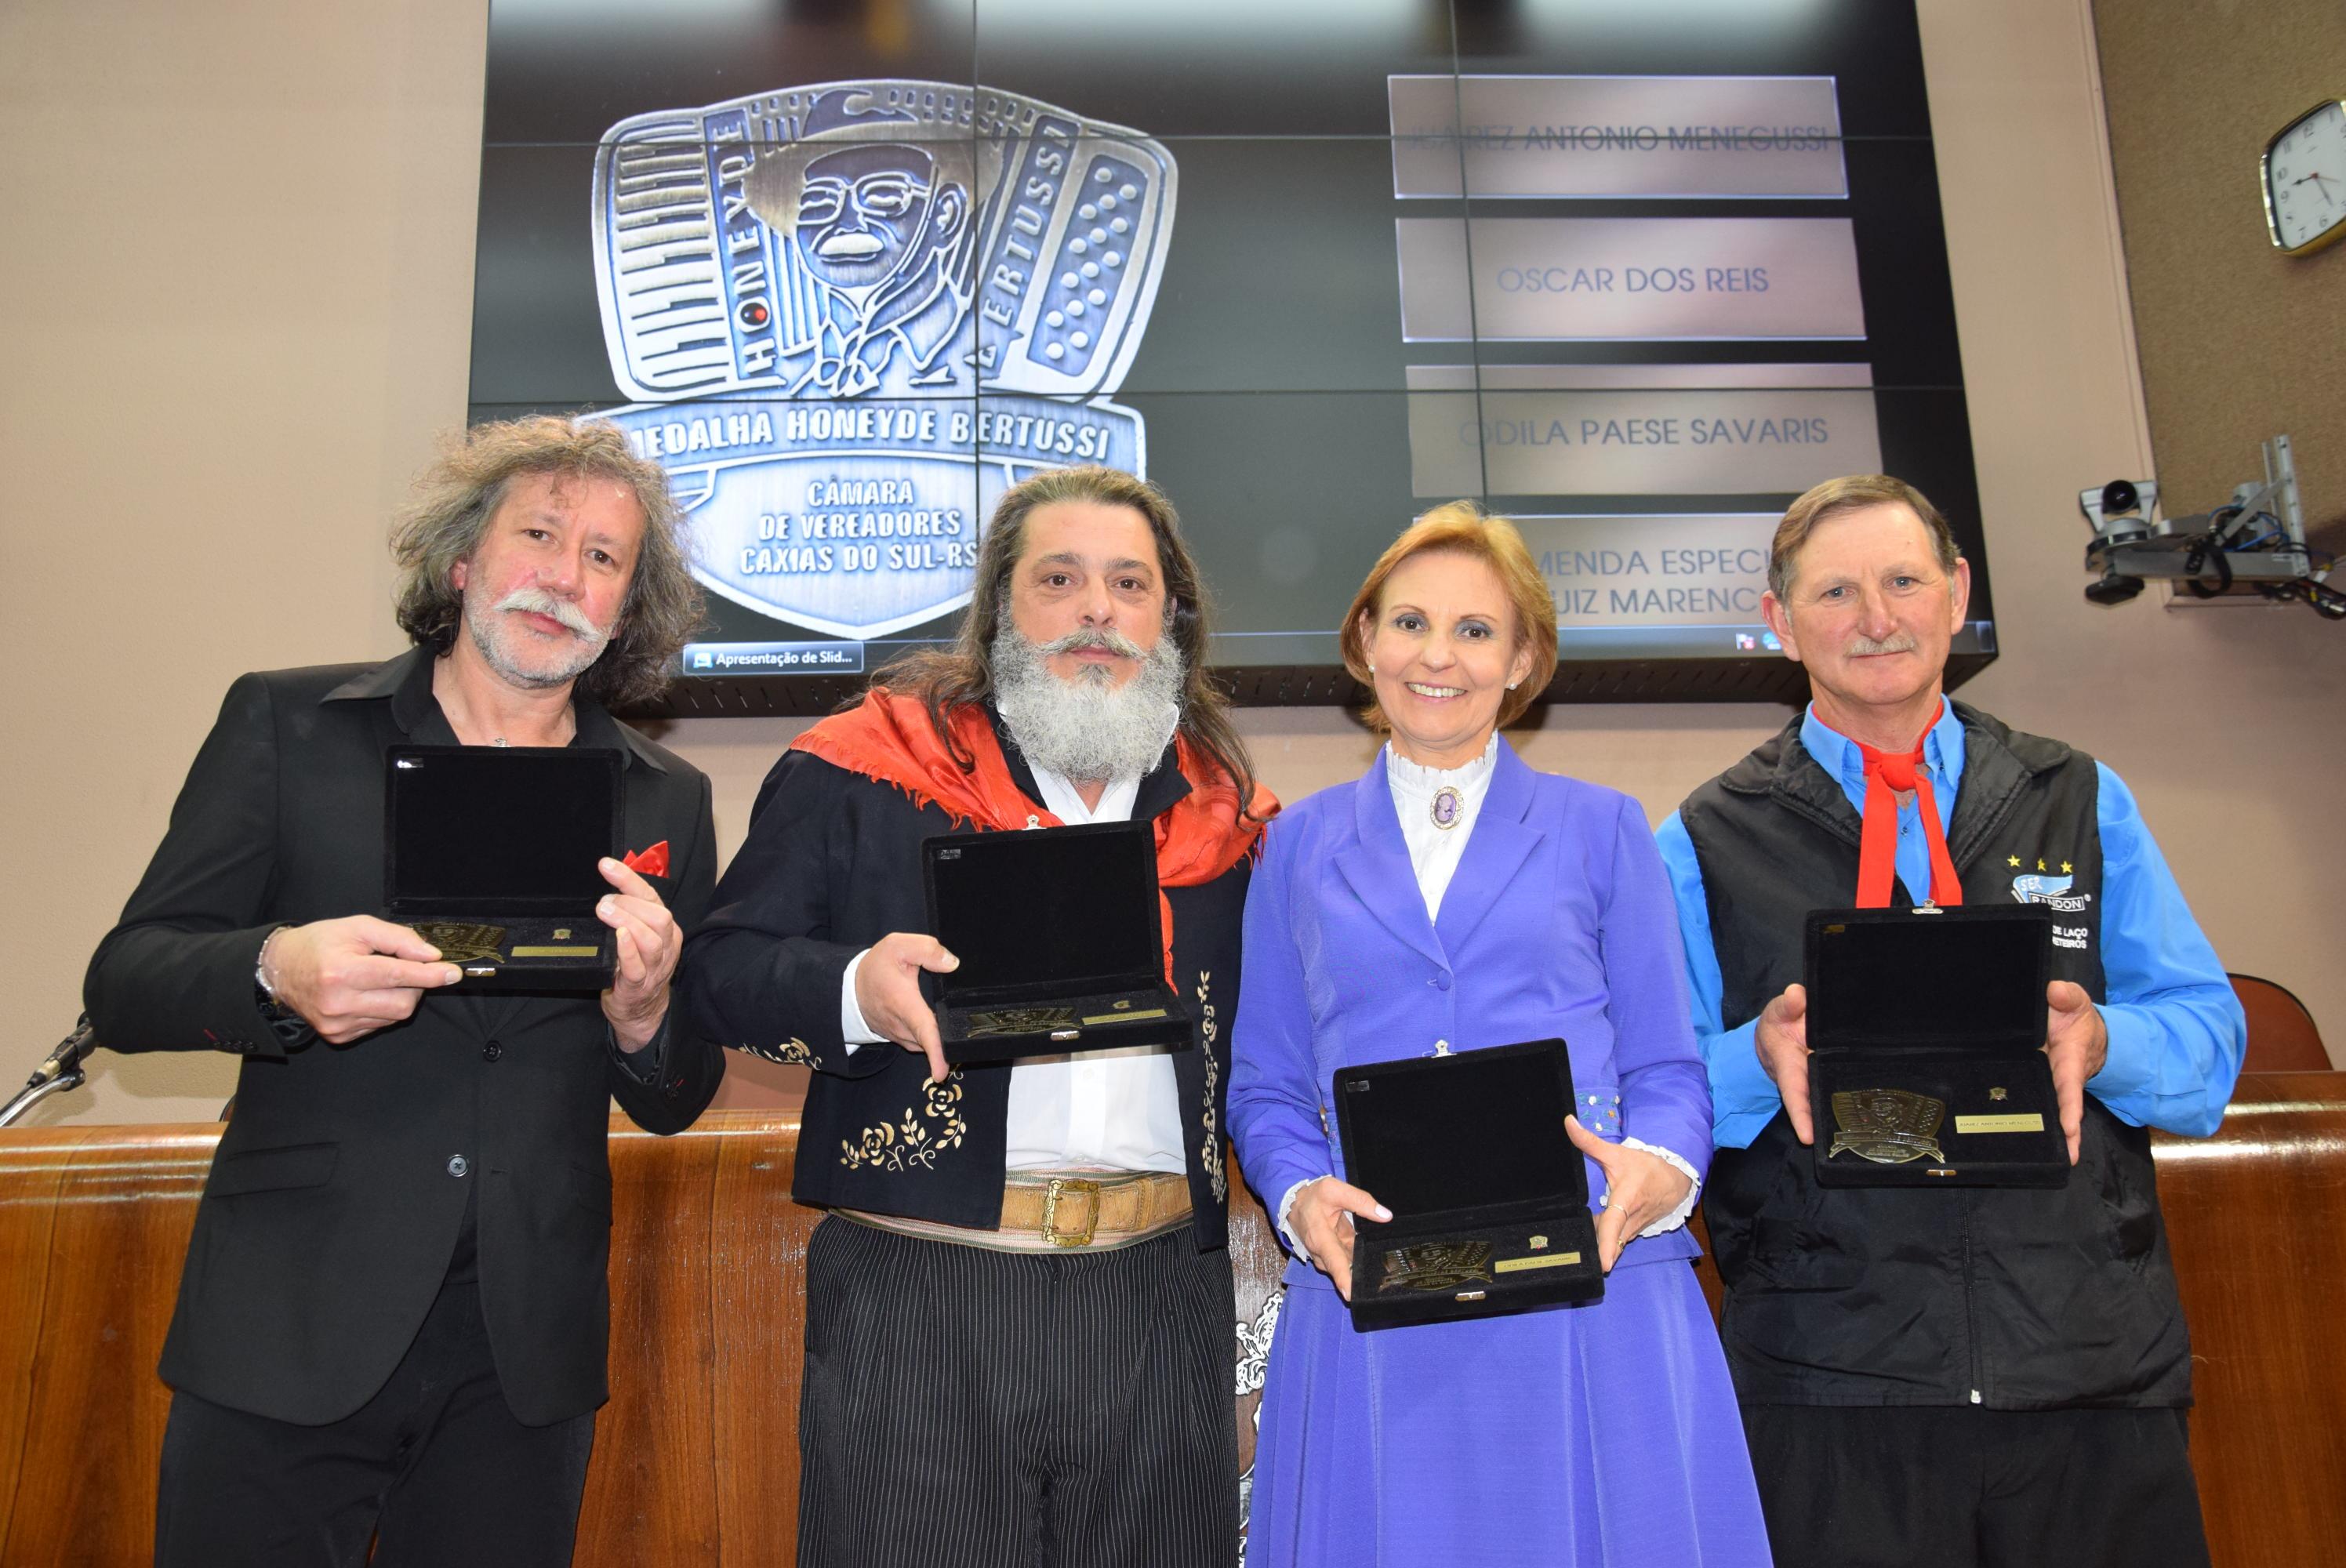 Oscar dos Reis, Luiz Marenco, Odila Savaris e Juarez Menegussi comemoram a Comenda Medalha Honeyde Bertussi 2016